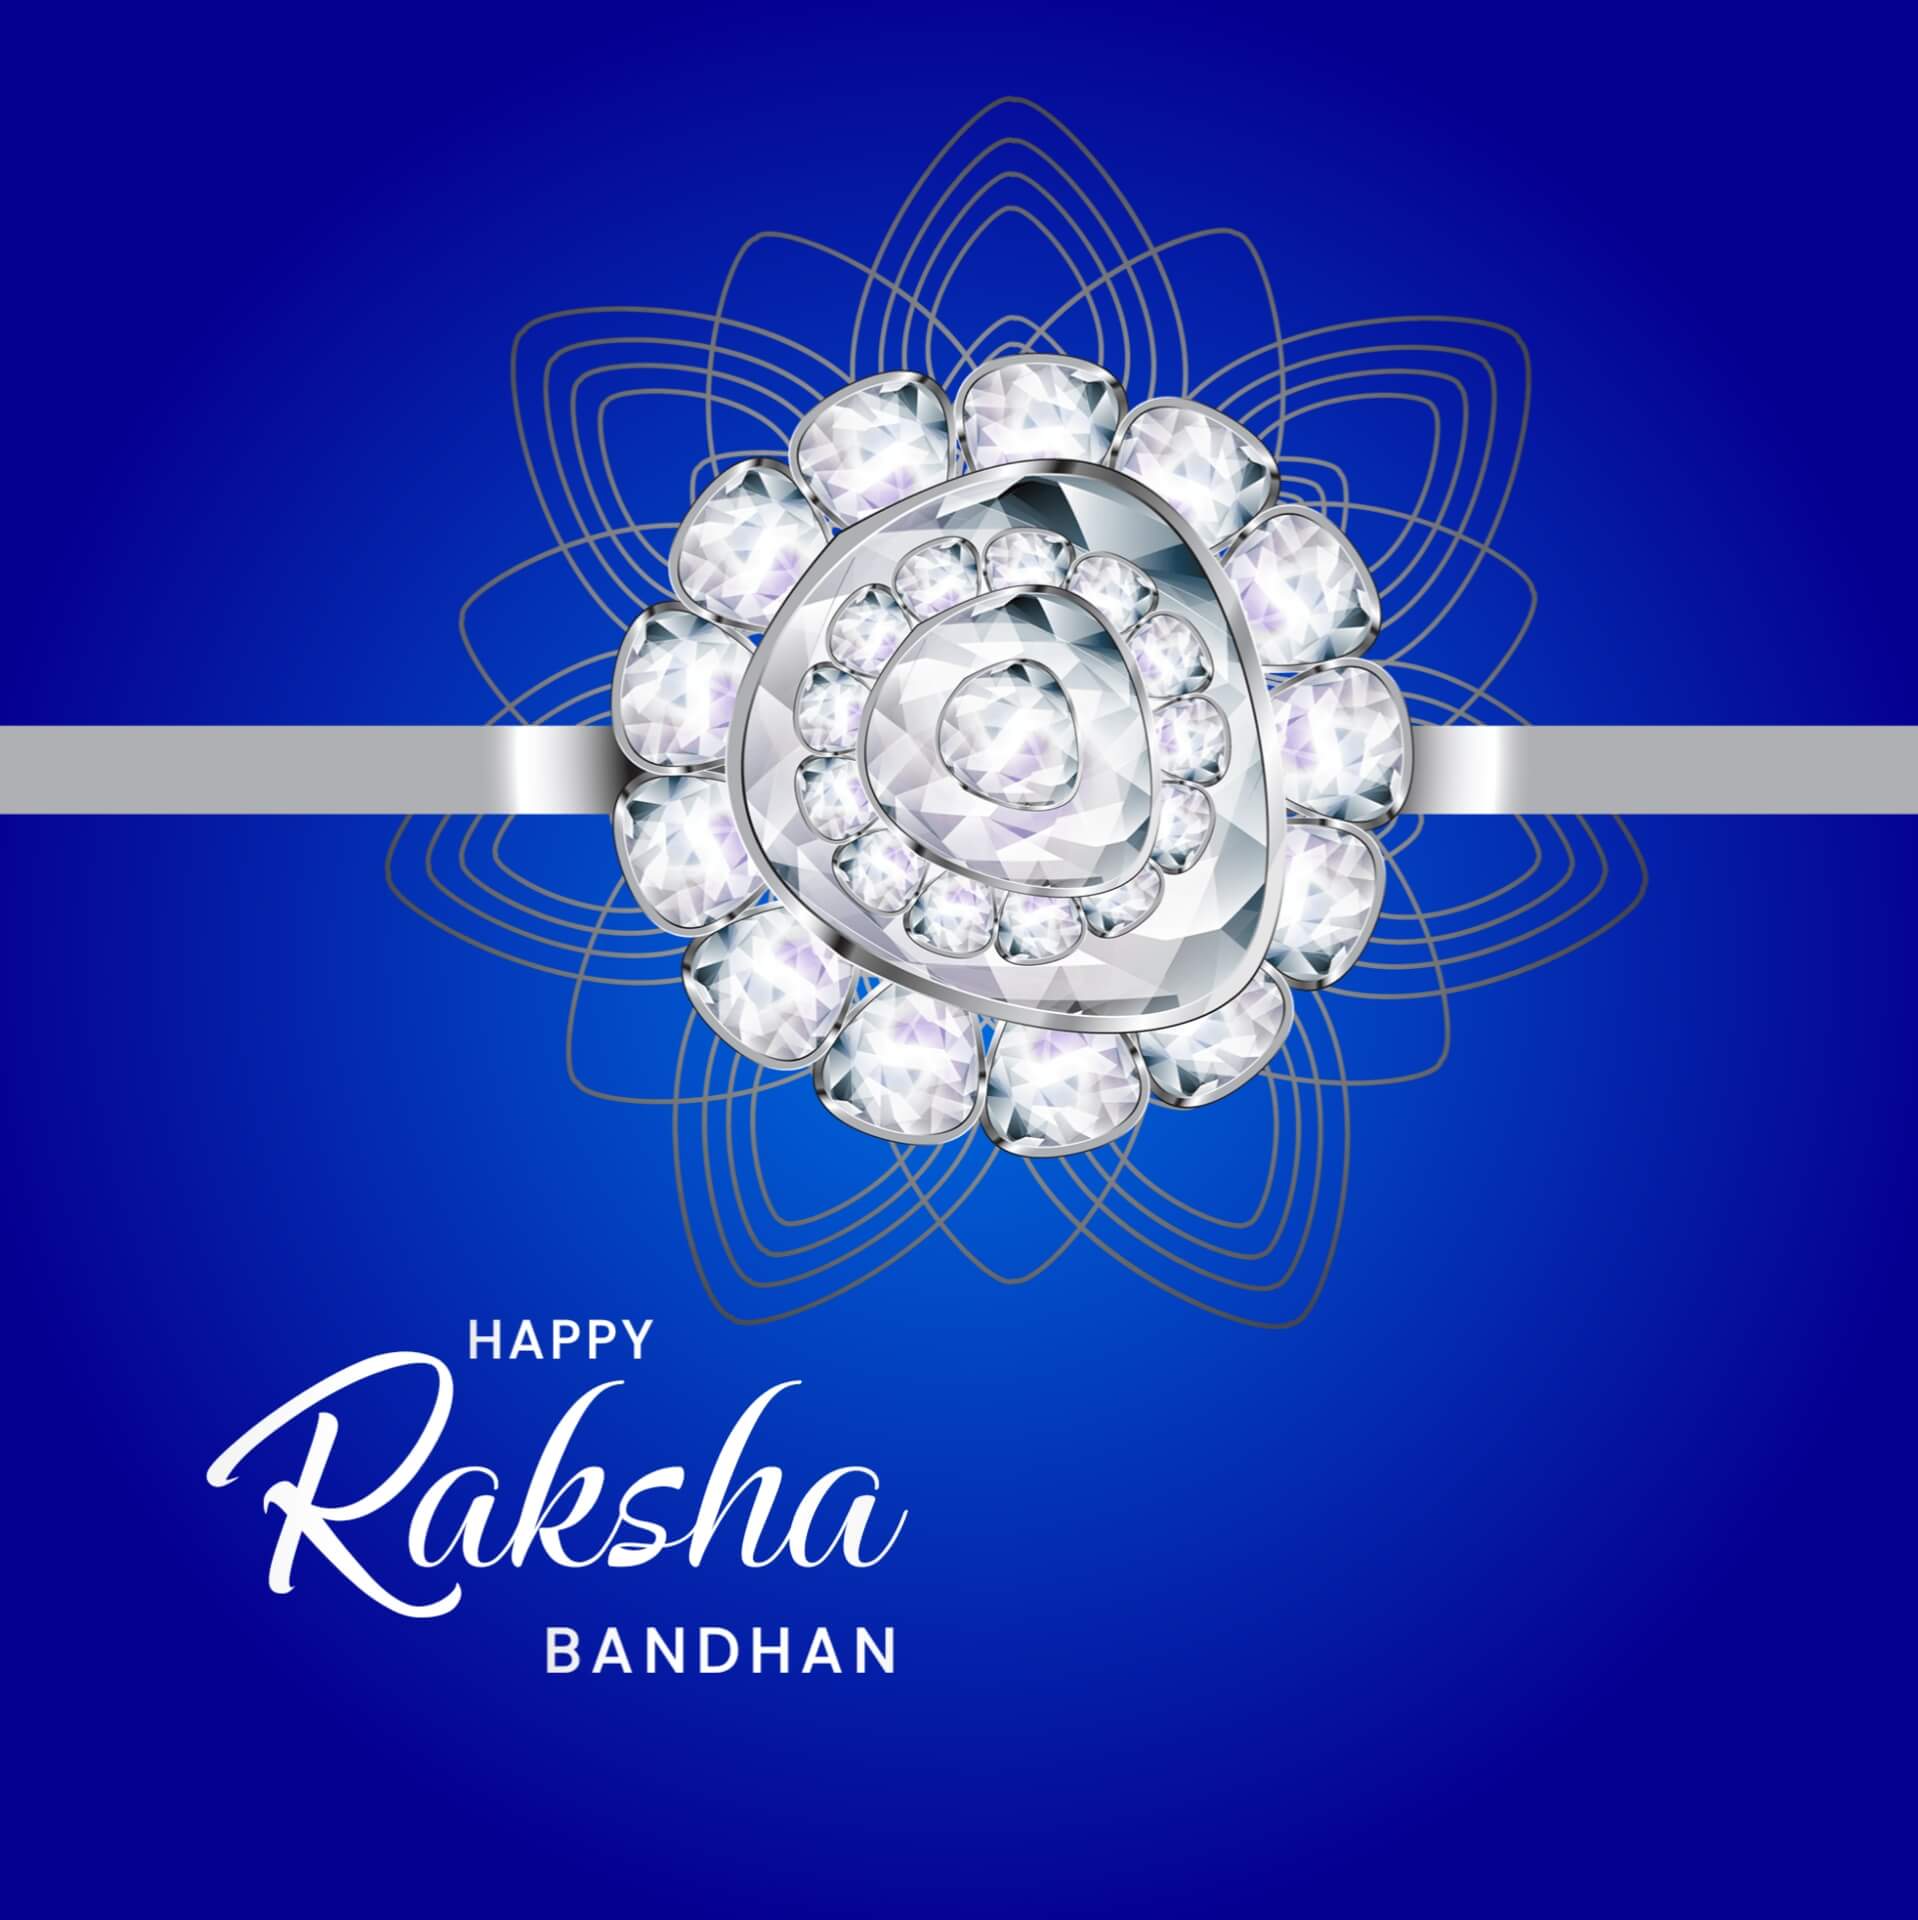 Free Raksha Bandhan Image